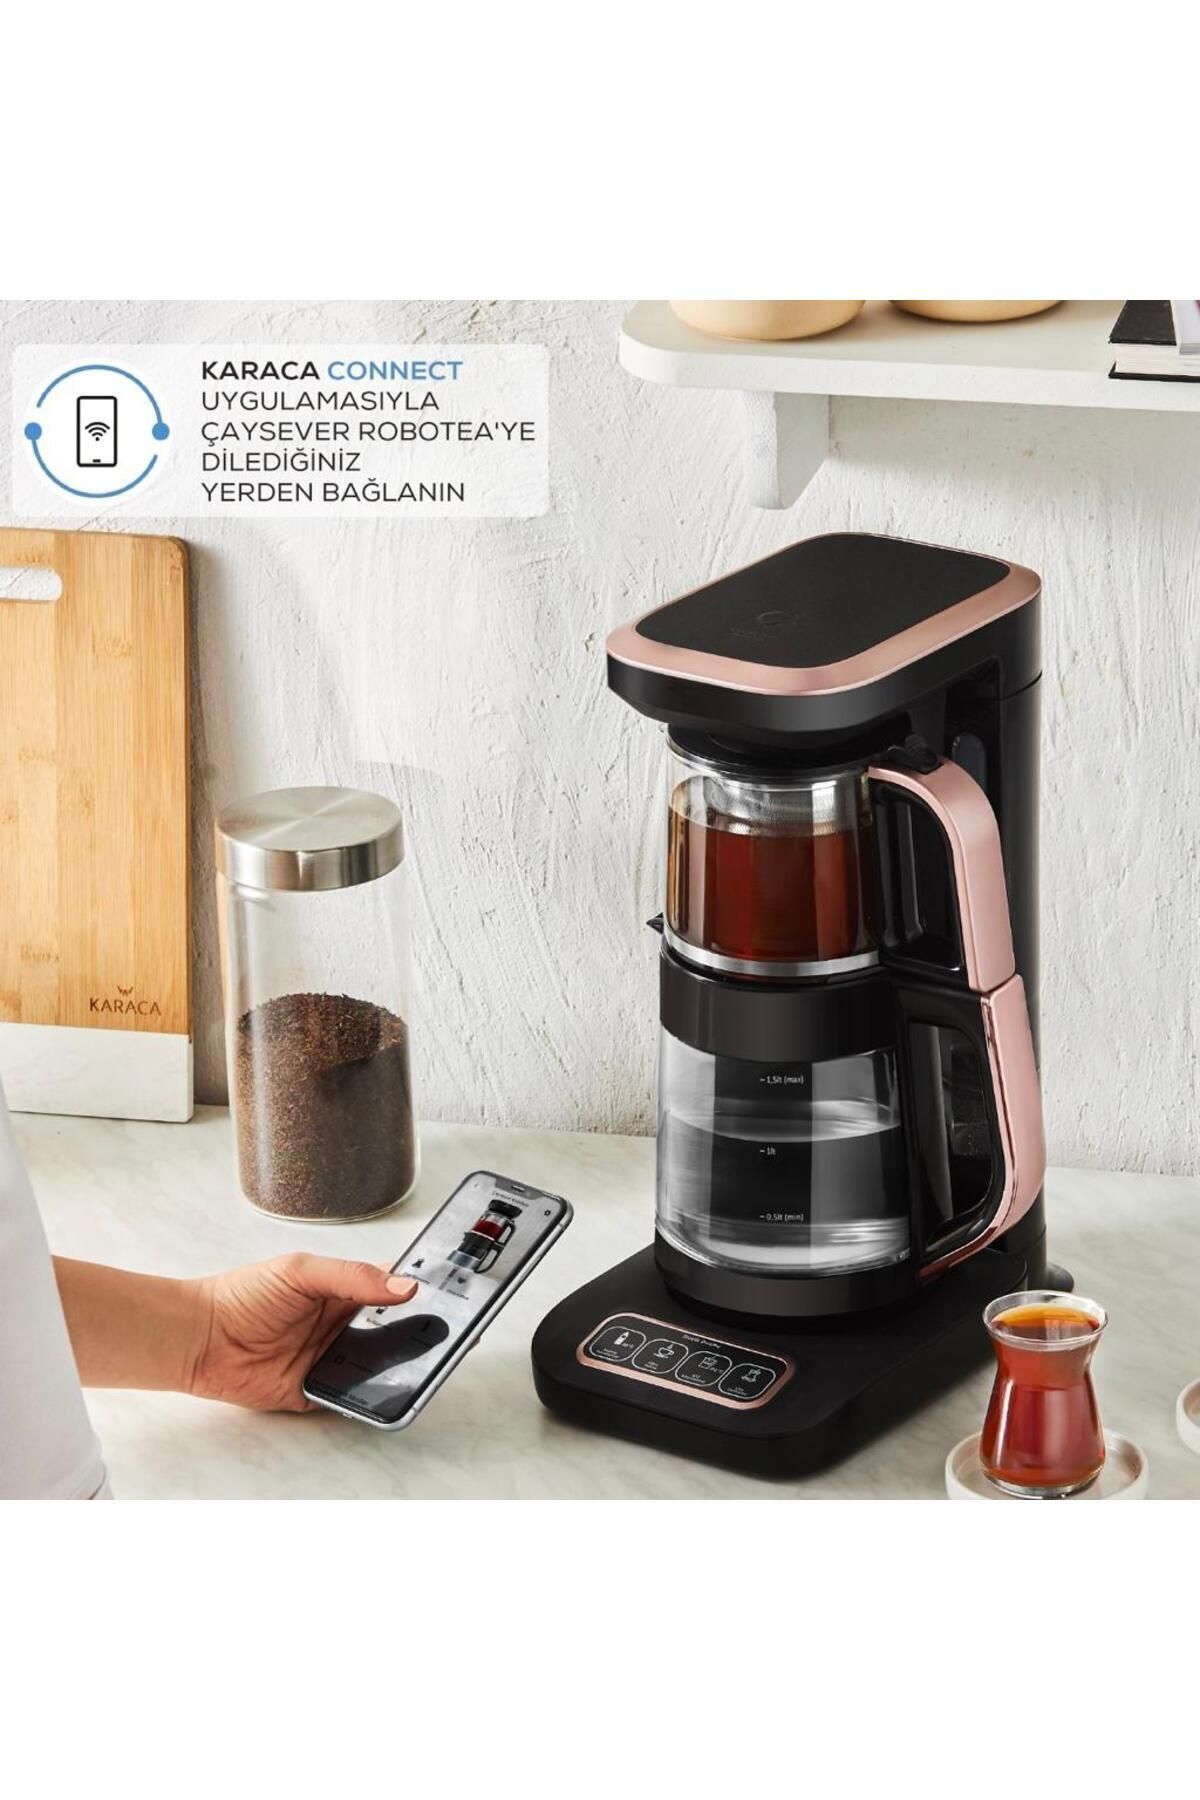 Karaca Premium Konuşan Connect-Wifi-Uzaktan Erişimli Otomatik Cam Çay Makinesi ve Filtre Kahve Makinesi